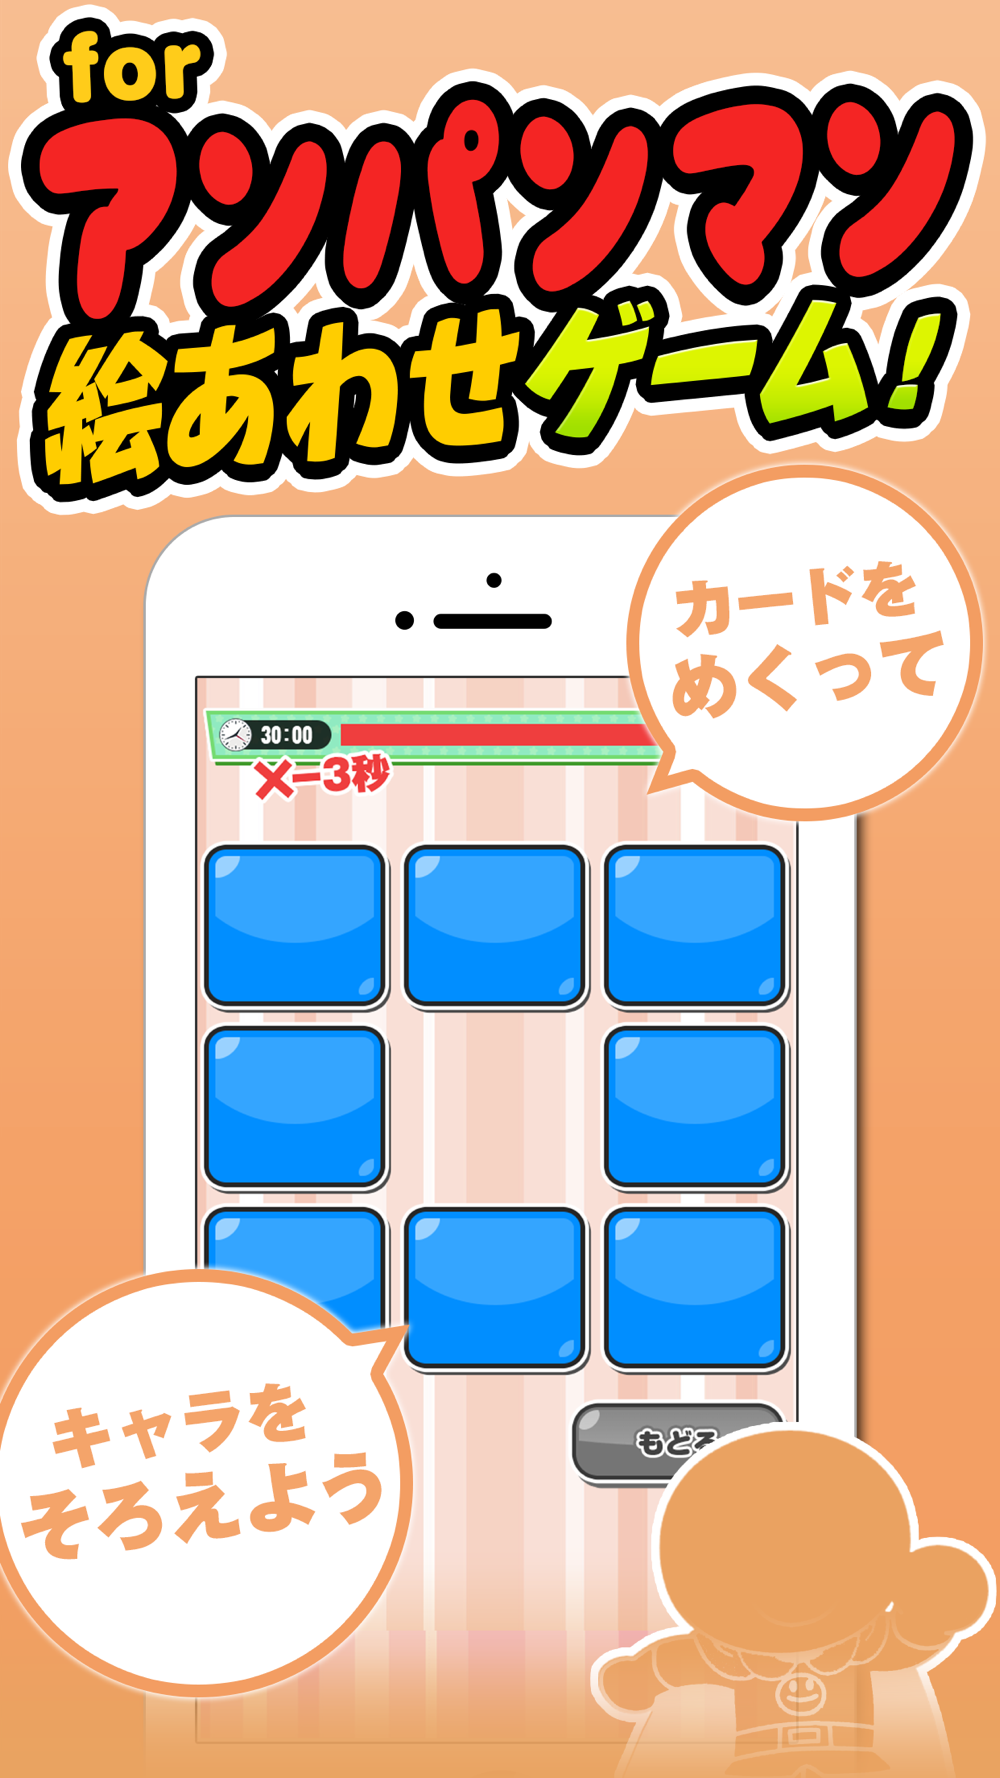 おやこであそぼう 神経衰弱 For アンパンマン 無料で遊べる子供向けカードゲーム Free Download App For Iphone Steprimo Com